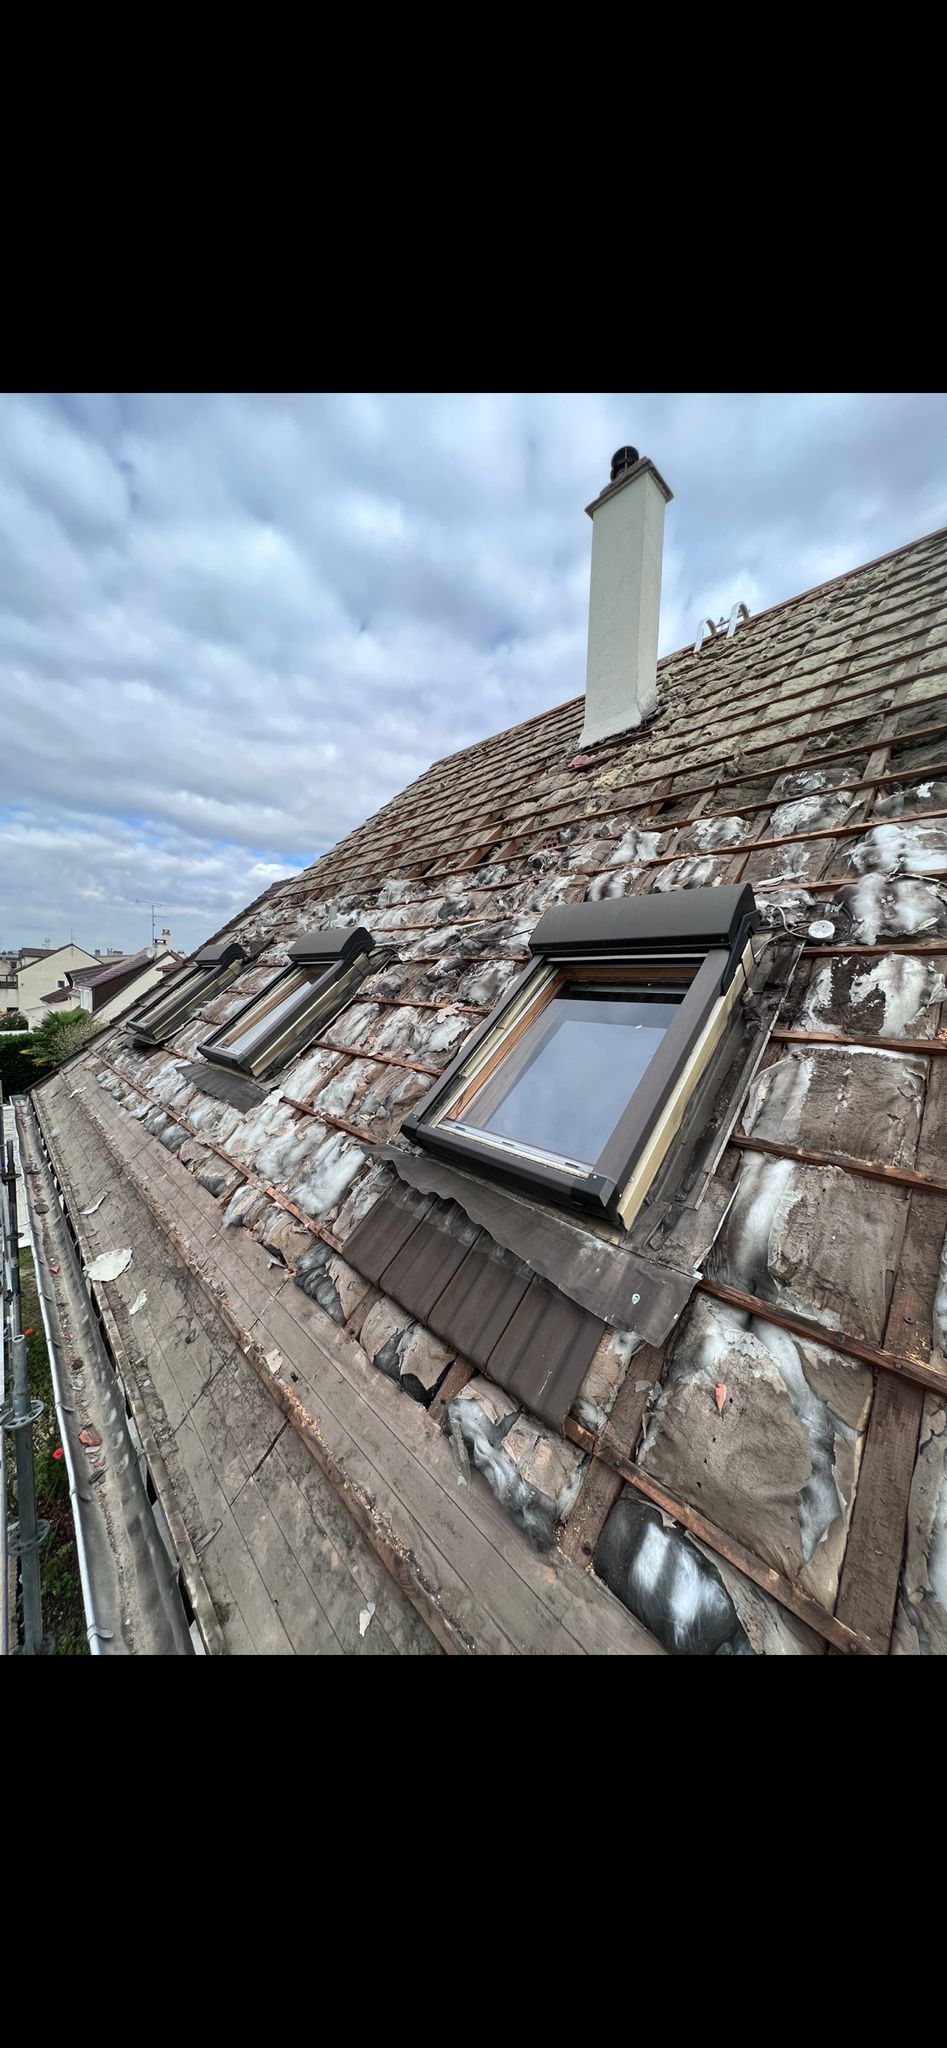 Installation des trois fenêtres de toit d'une toiture en cours de rénovation